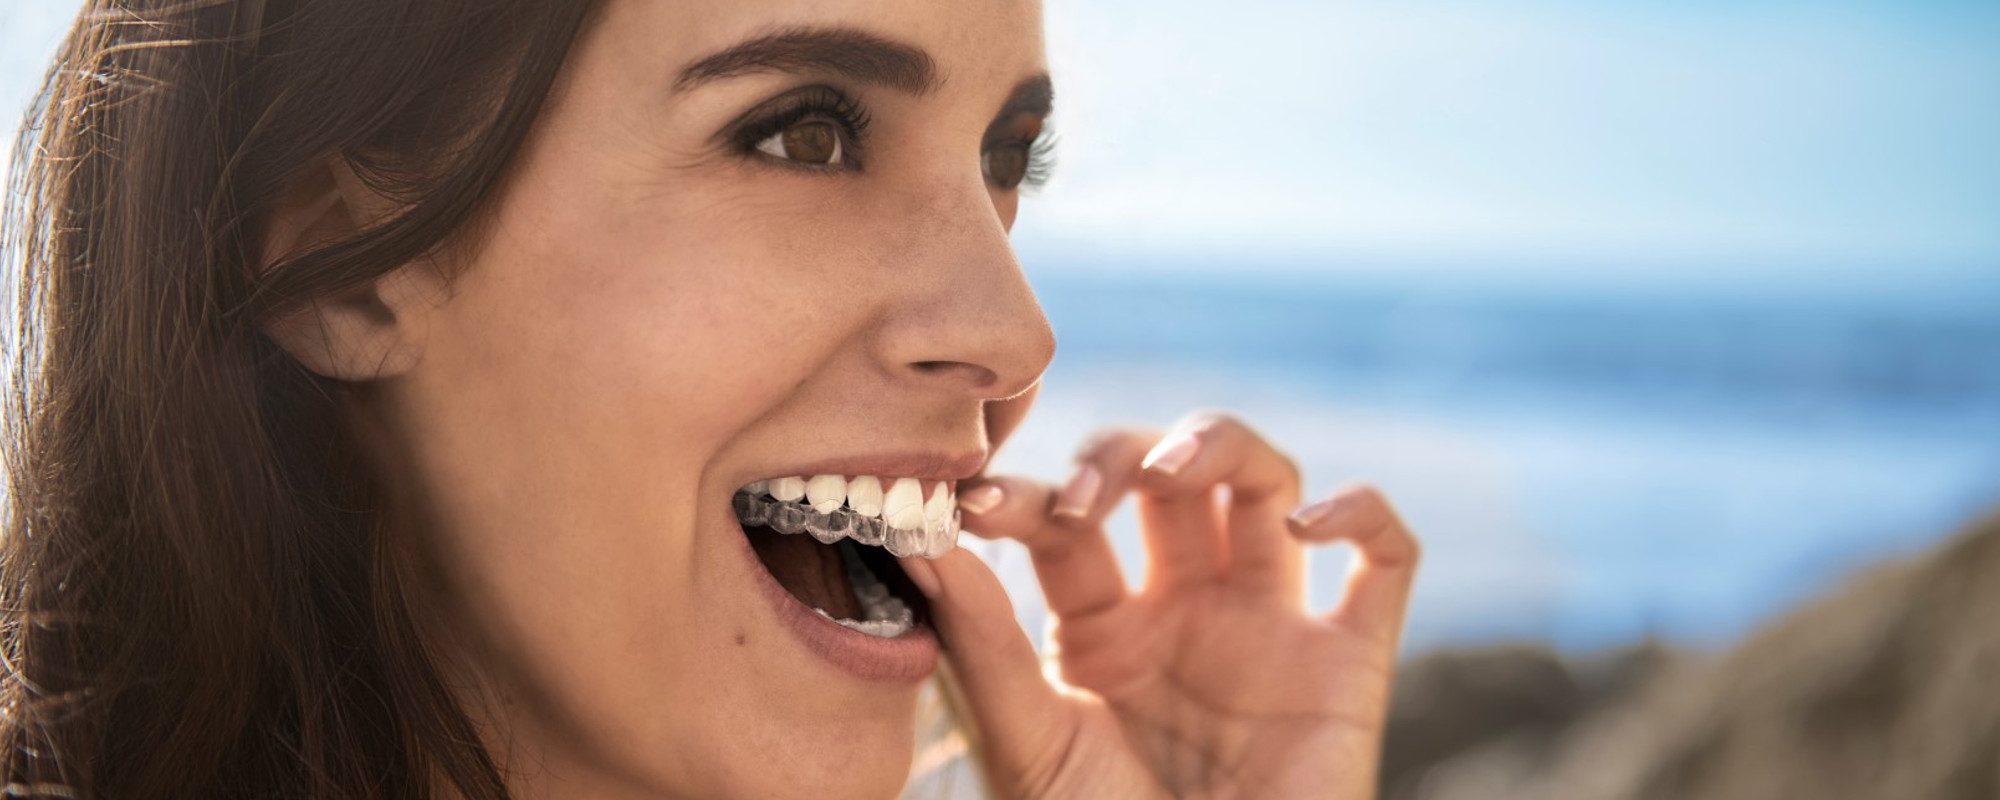 Come saranno i miei denti dopo l’ortodonzia invisibile? Scoprilo in 30 minuti con BlueSmile il 13 dicembre!